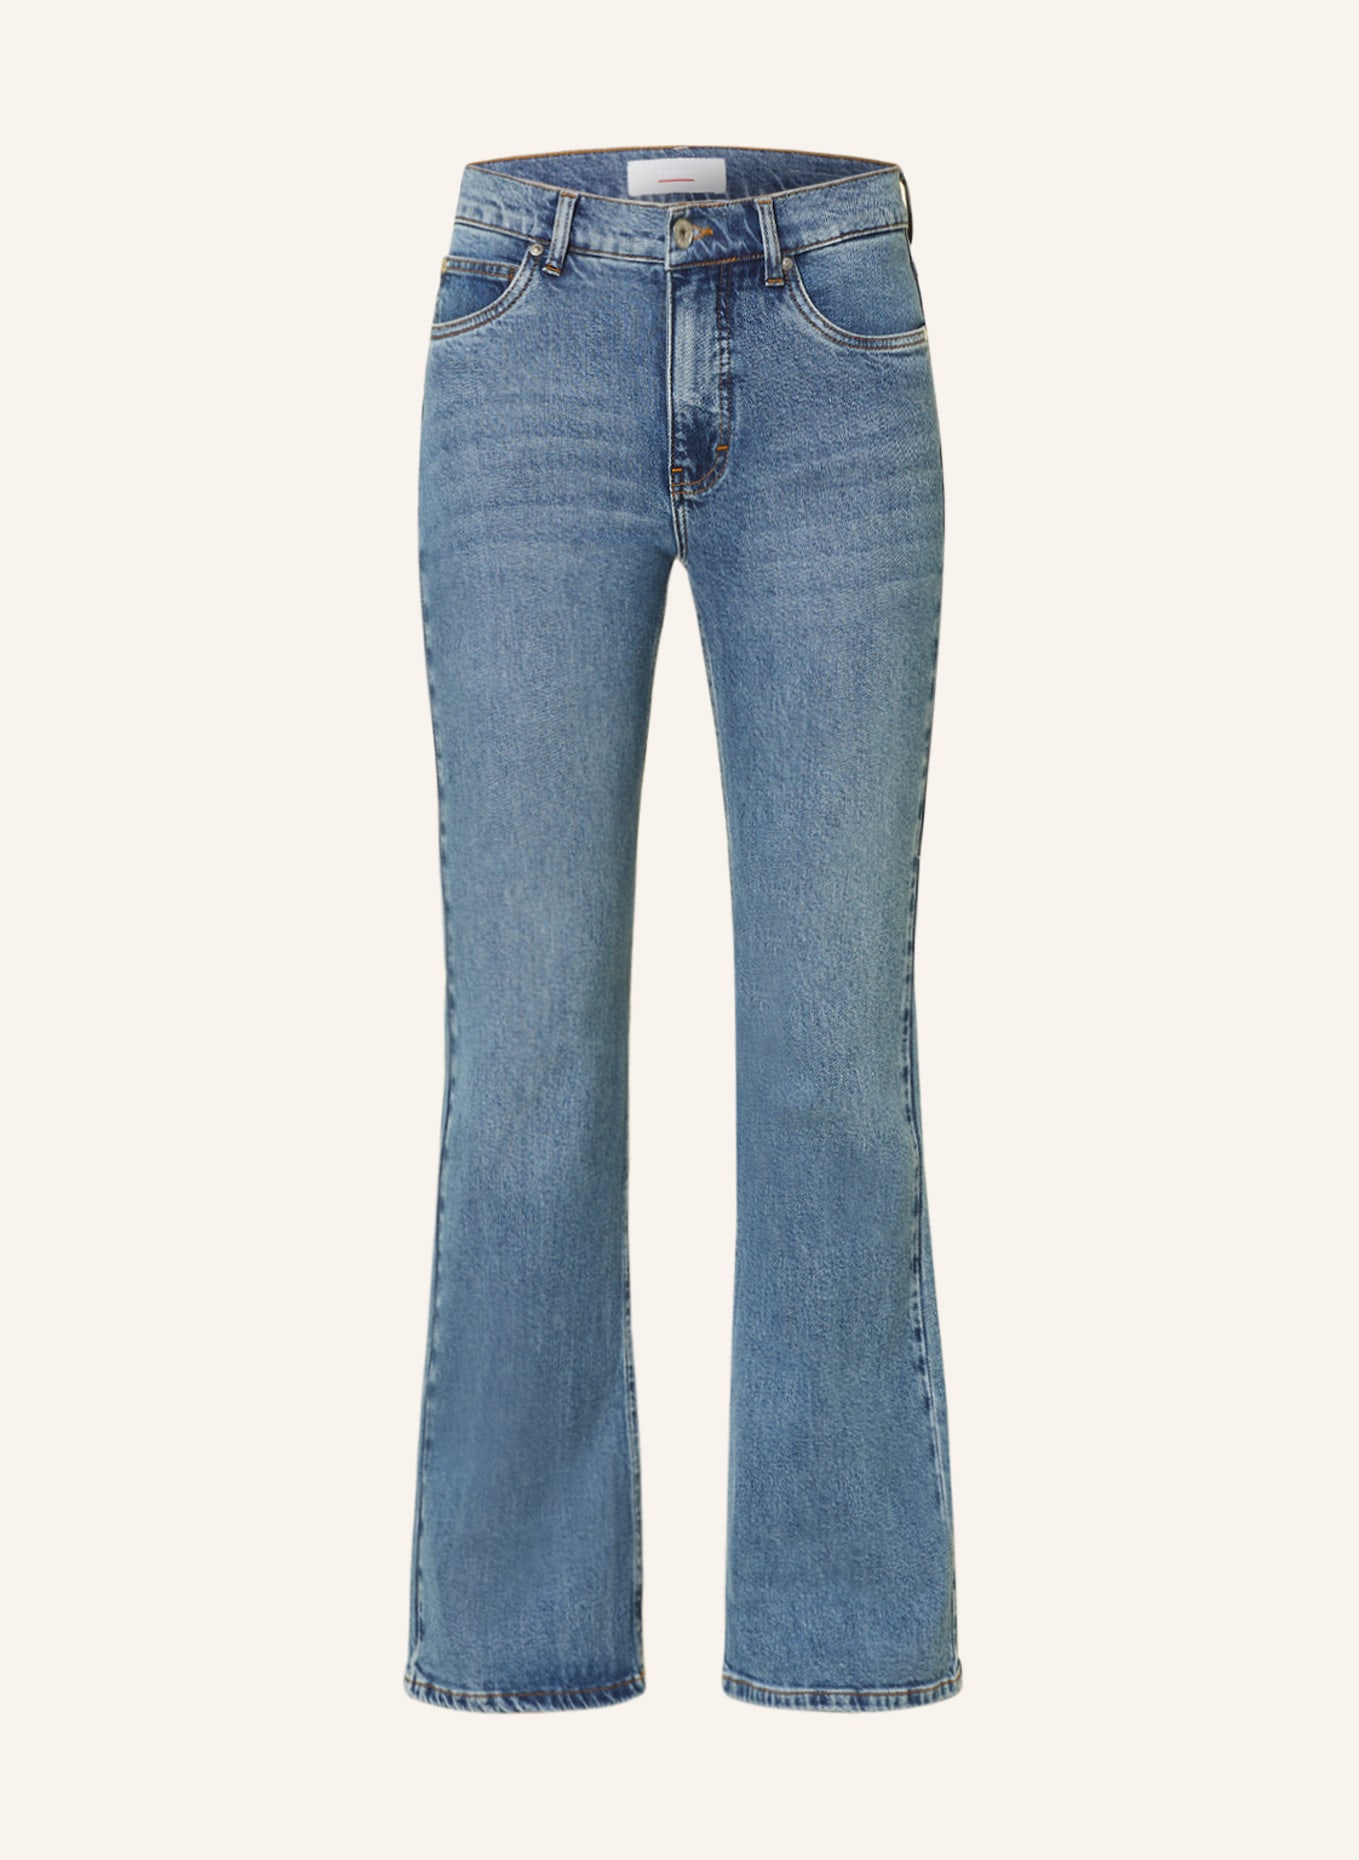 CINQUE Flared jeans, Color: 64 BLAU (Image 1)